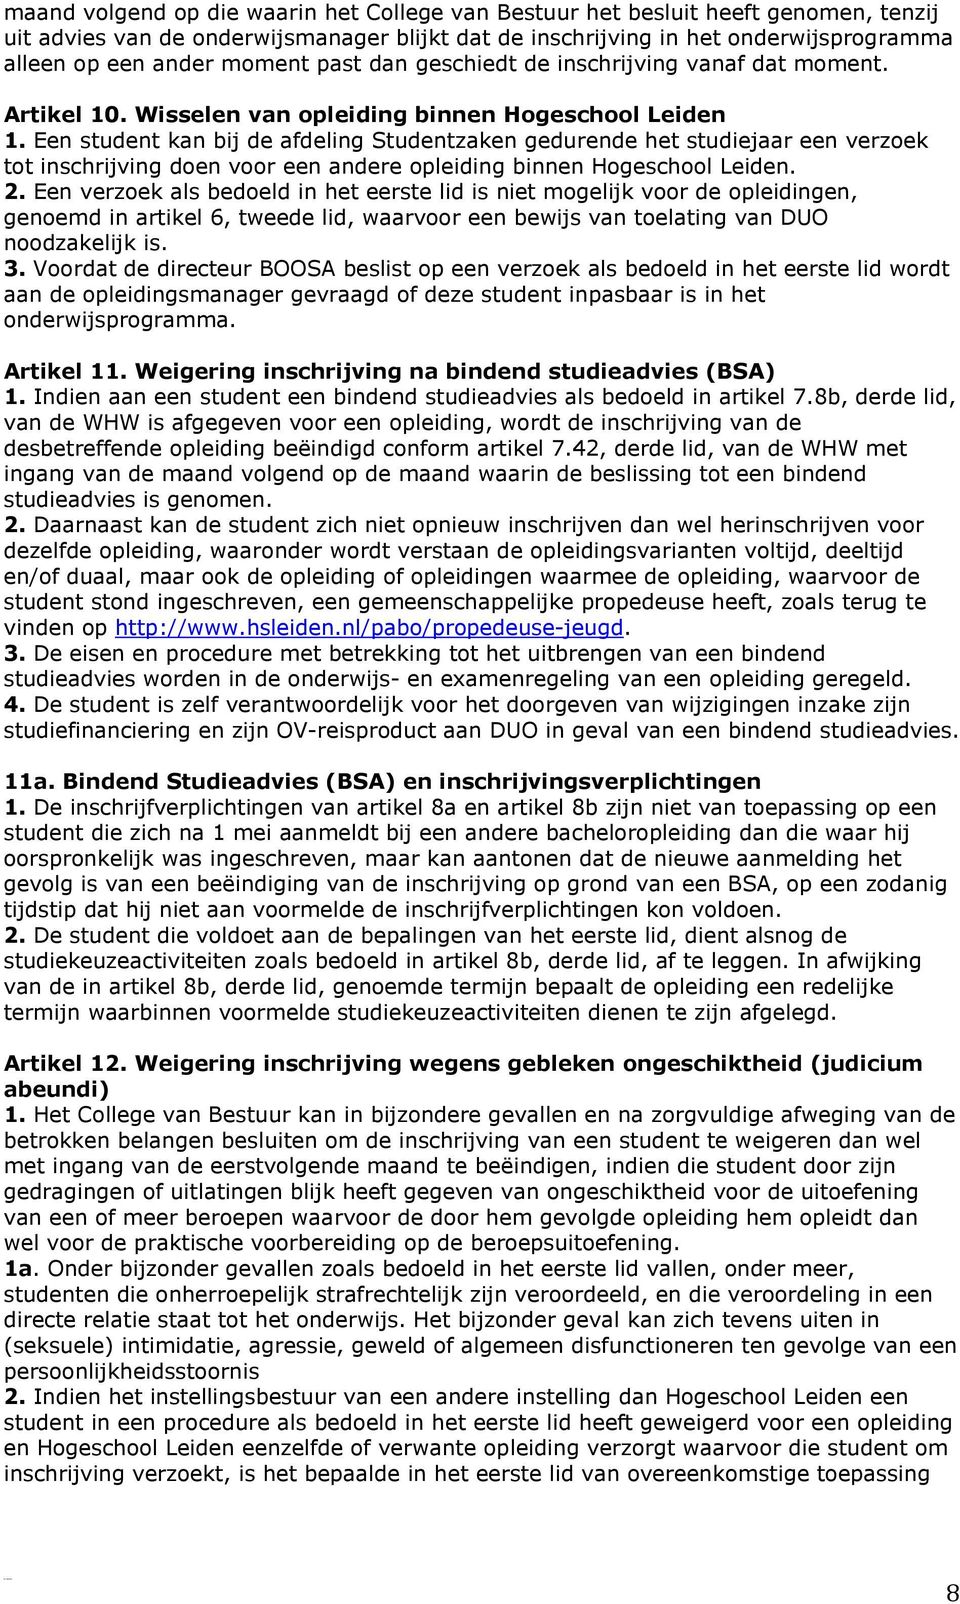 Een student kan bij de afdeling Studentzaken gedurende het studiejaar een verzoek tot inschrijving doen voor een andere opleiding binnen Hogeschool Leiden. 2.